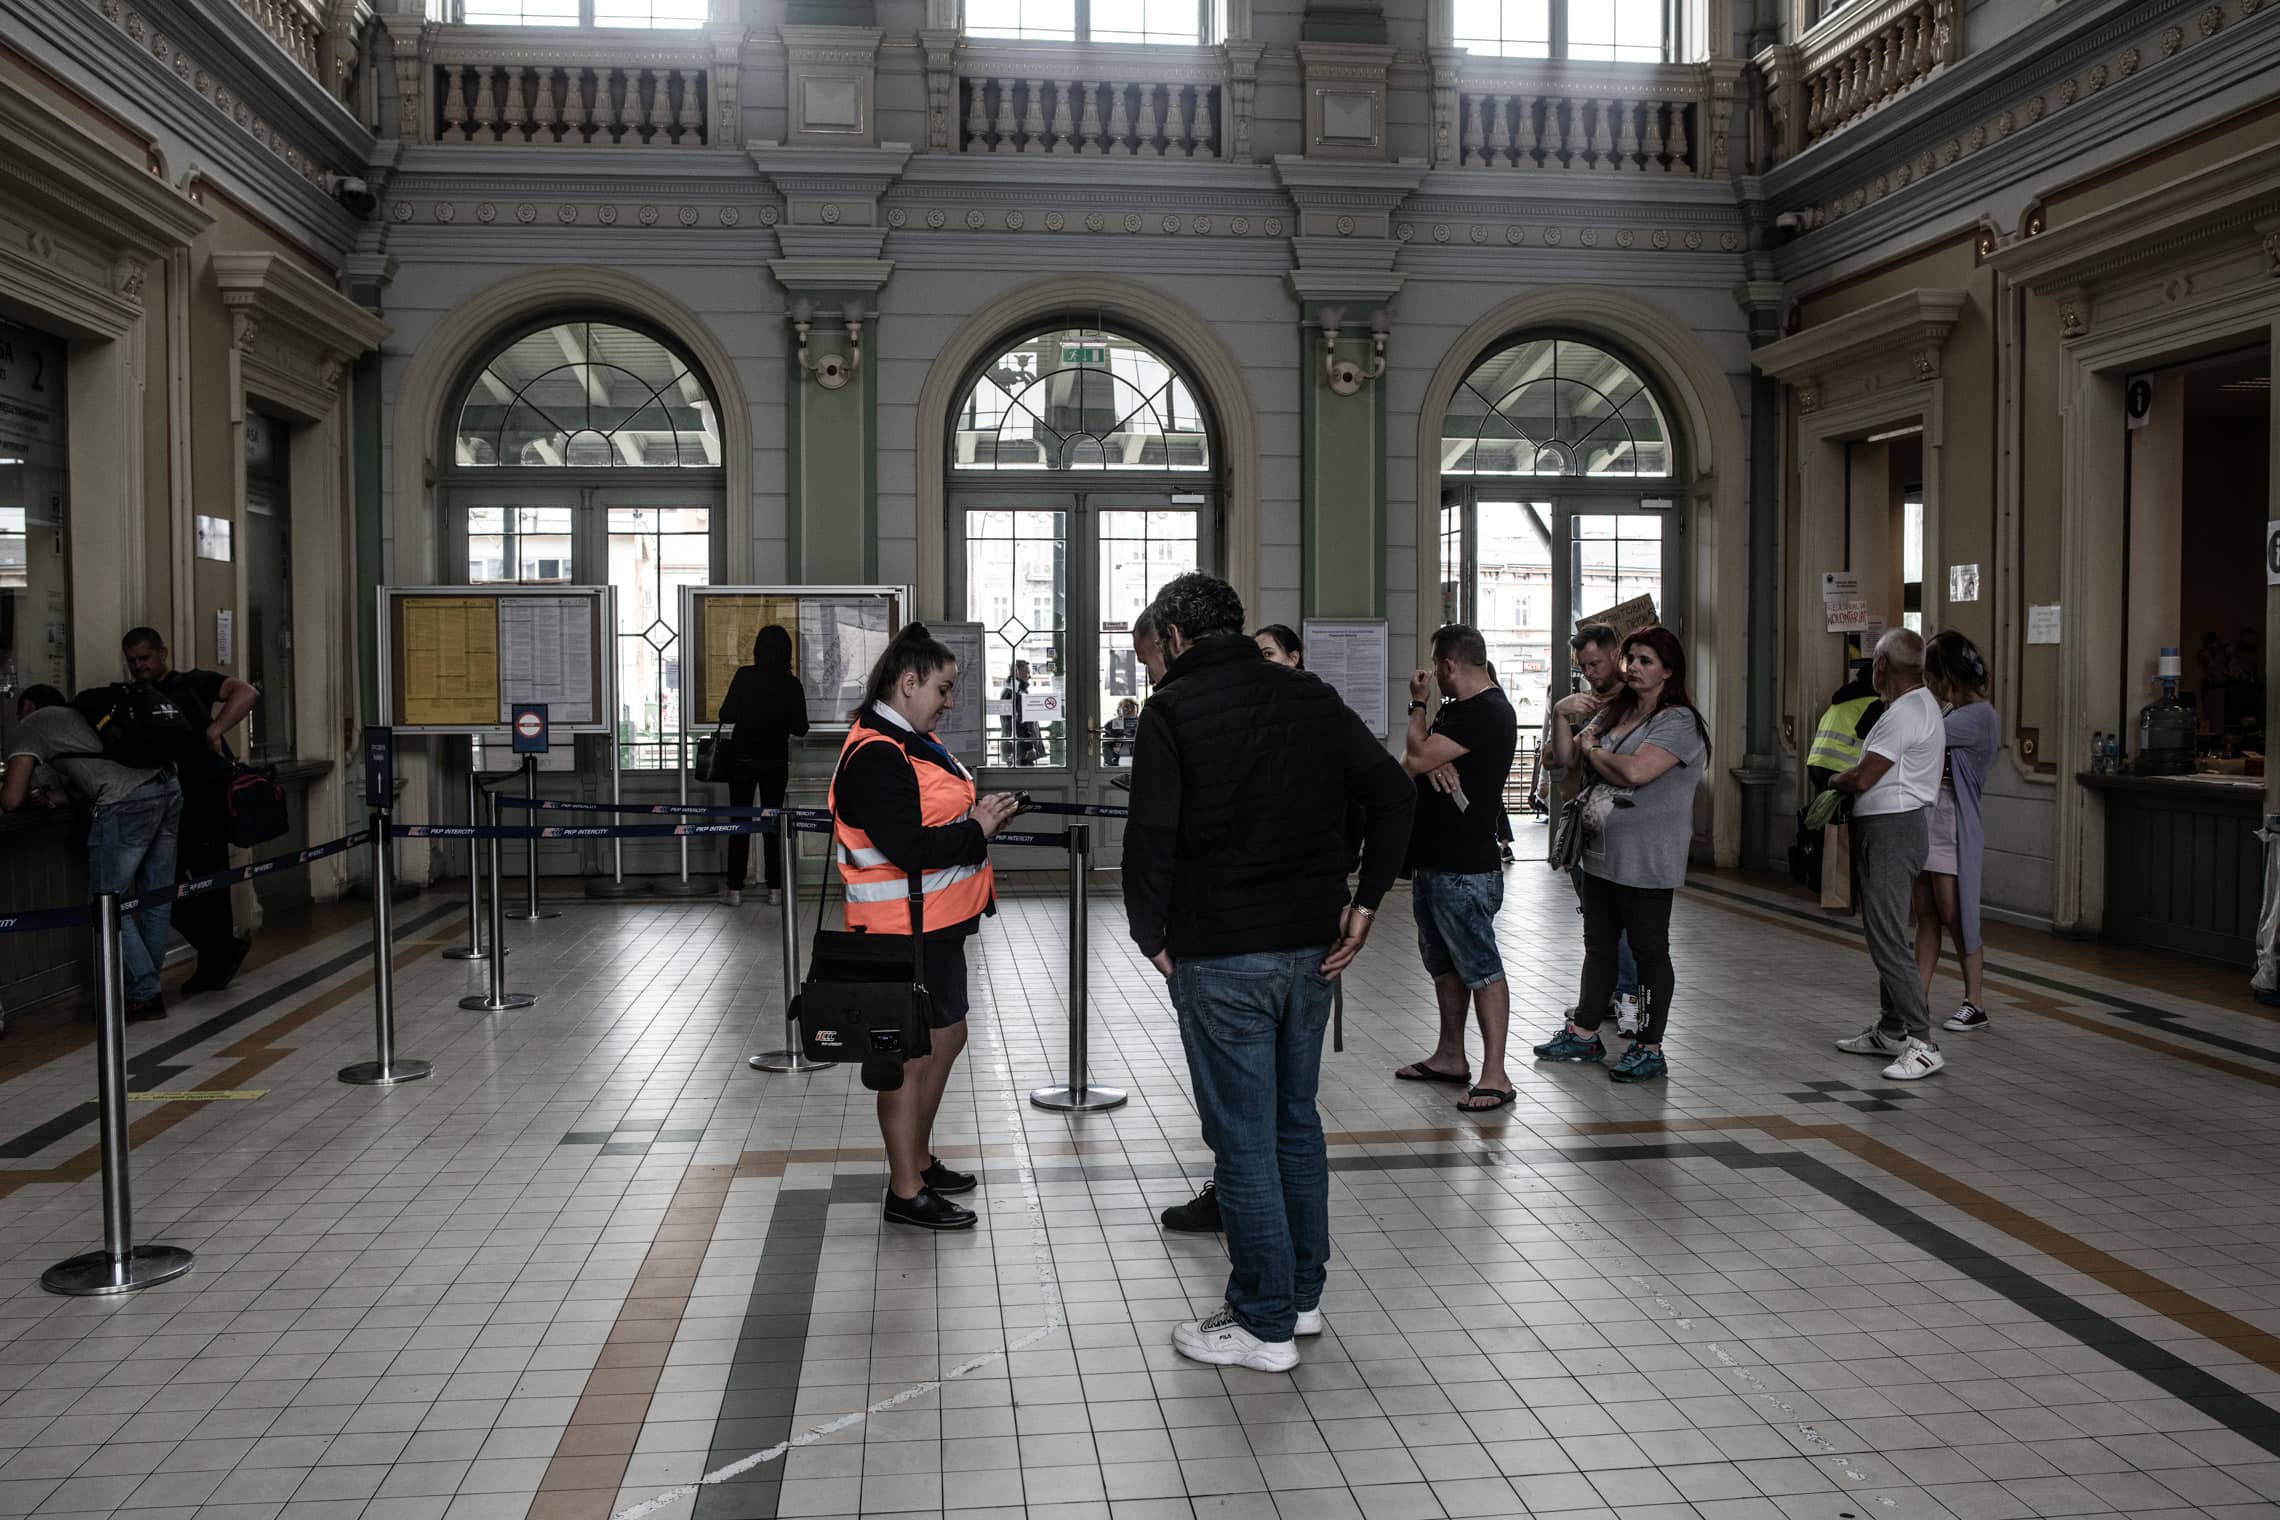 אולם הנוסעים הראשי בתחנת הרכבת בפשמישל, יוני 2022 (צילום: גילעד שדה)